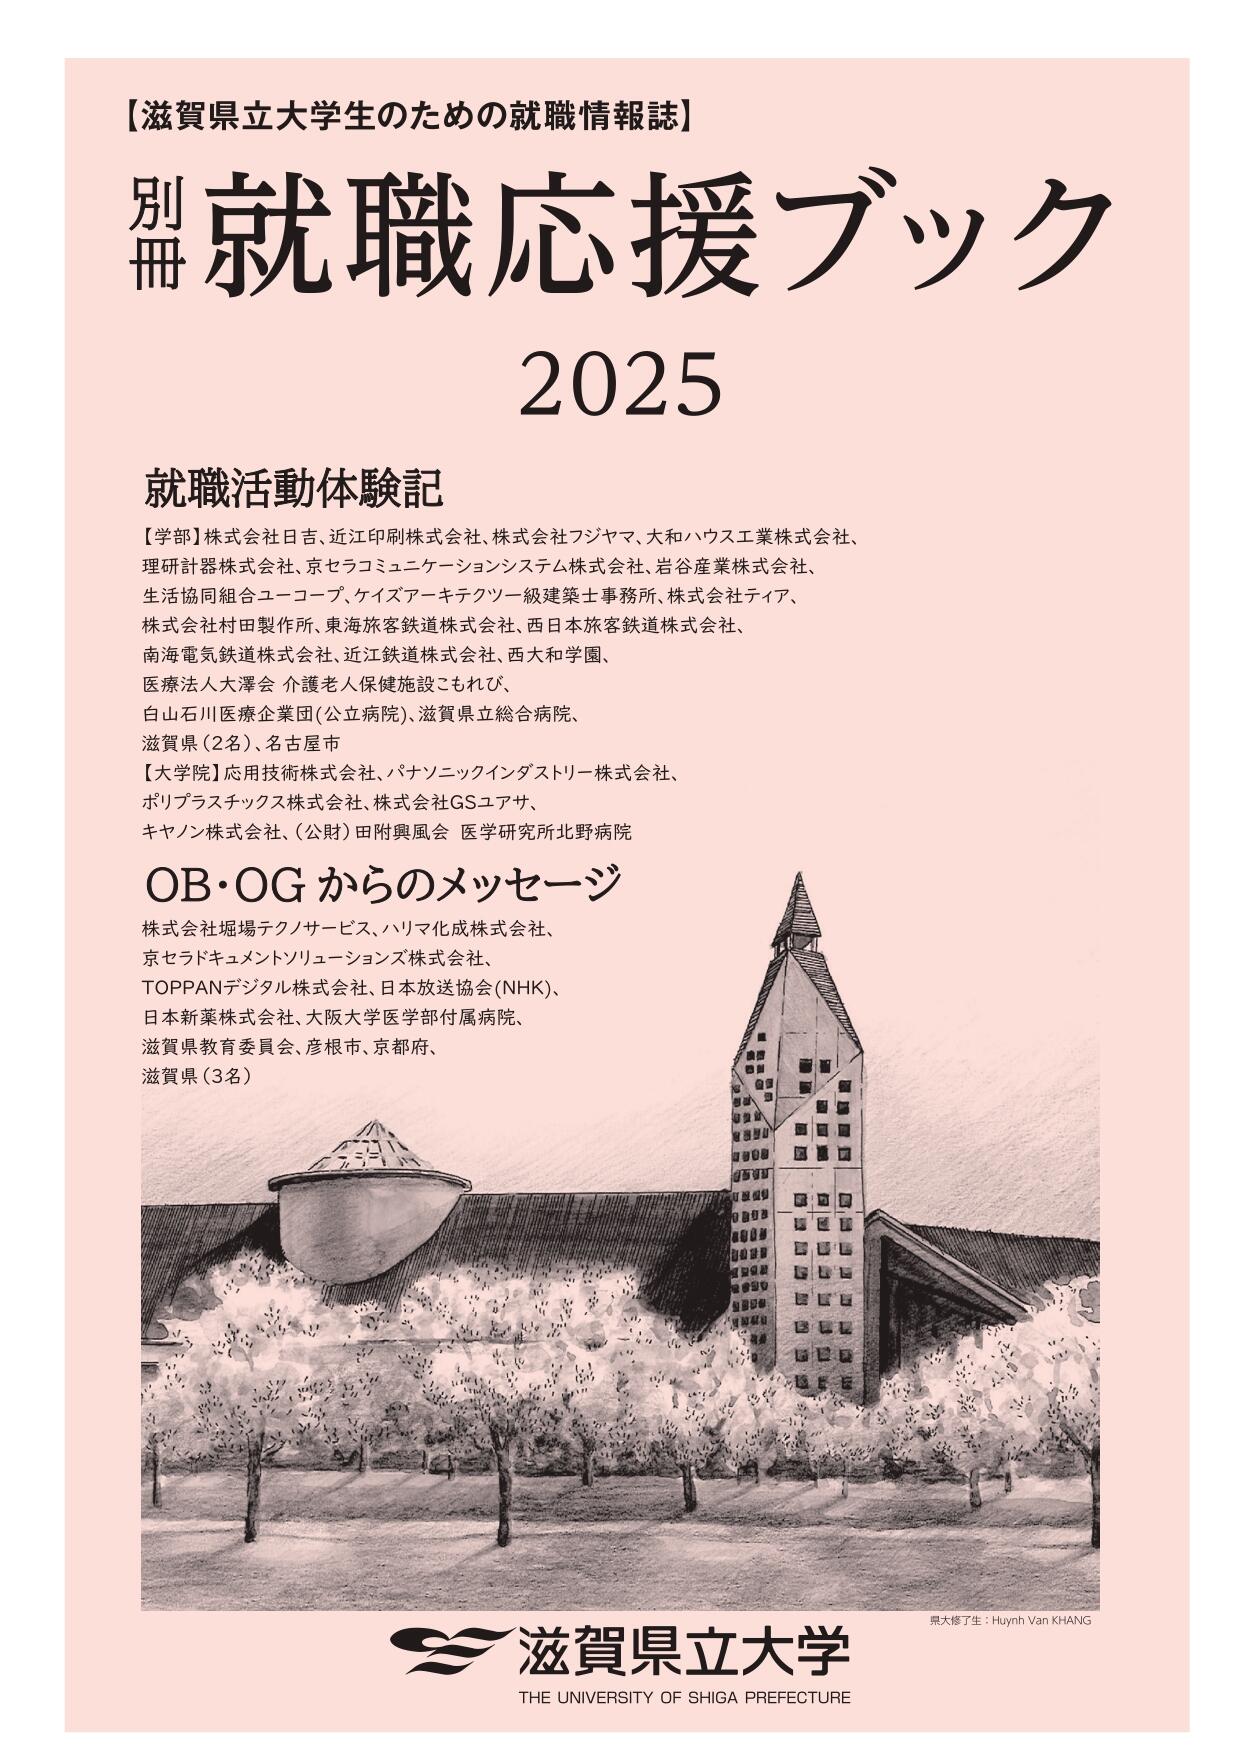 就職応援ブック2025【別冊】 -表紙_page-0001.jpg